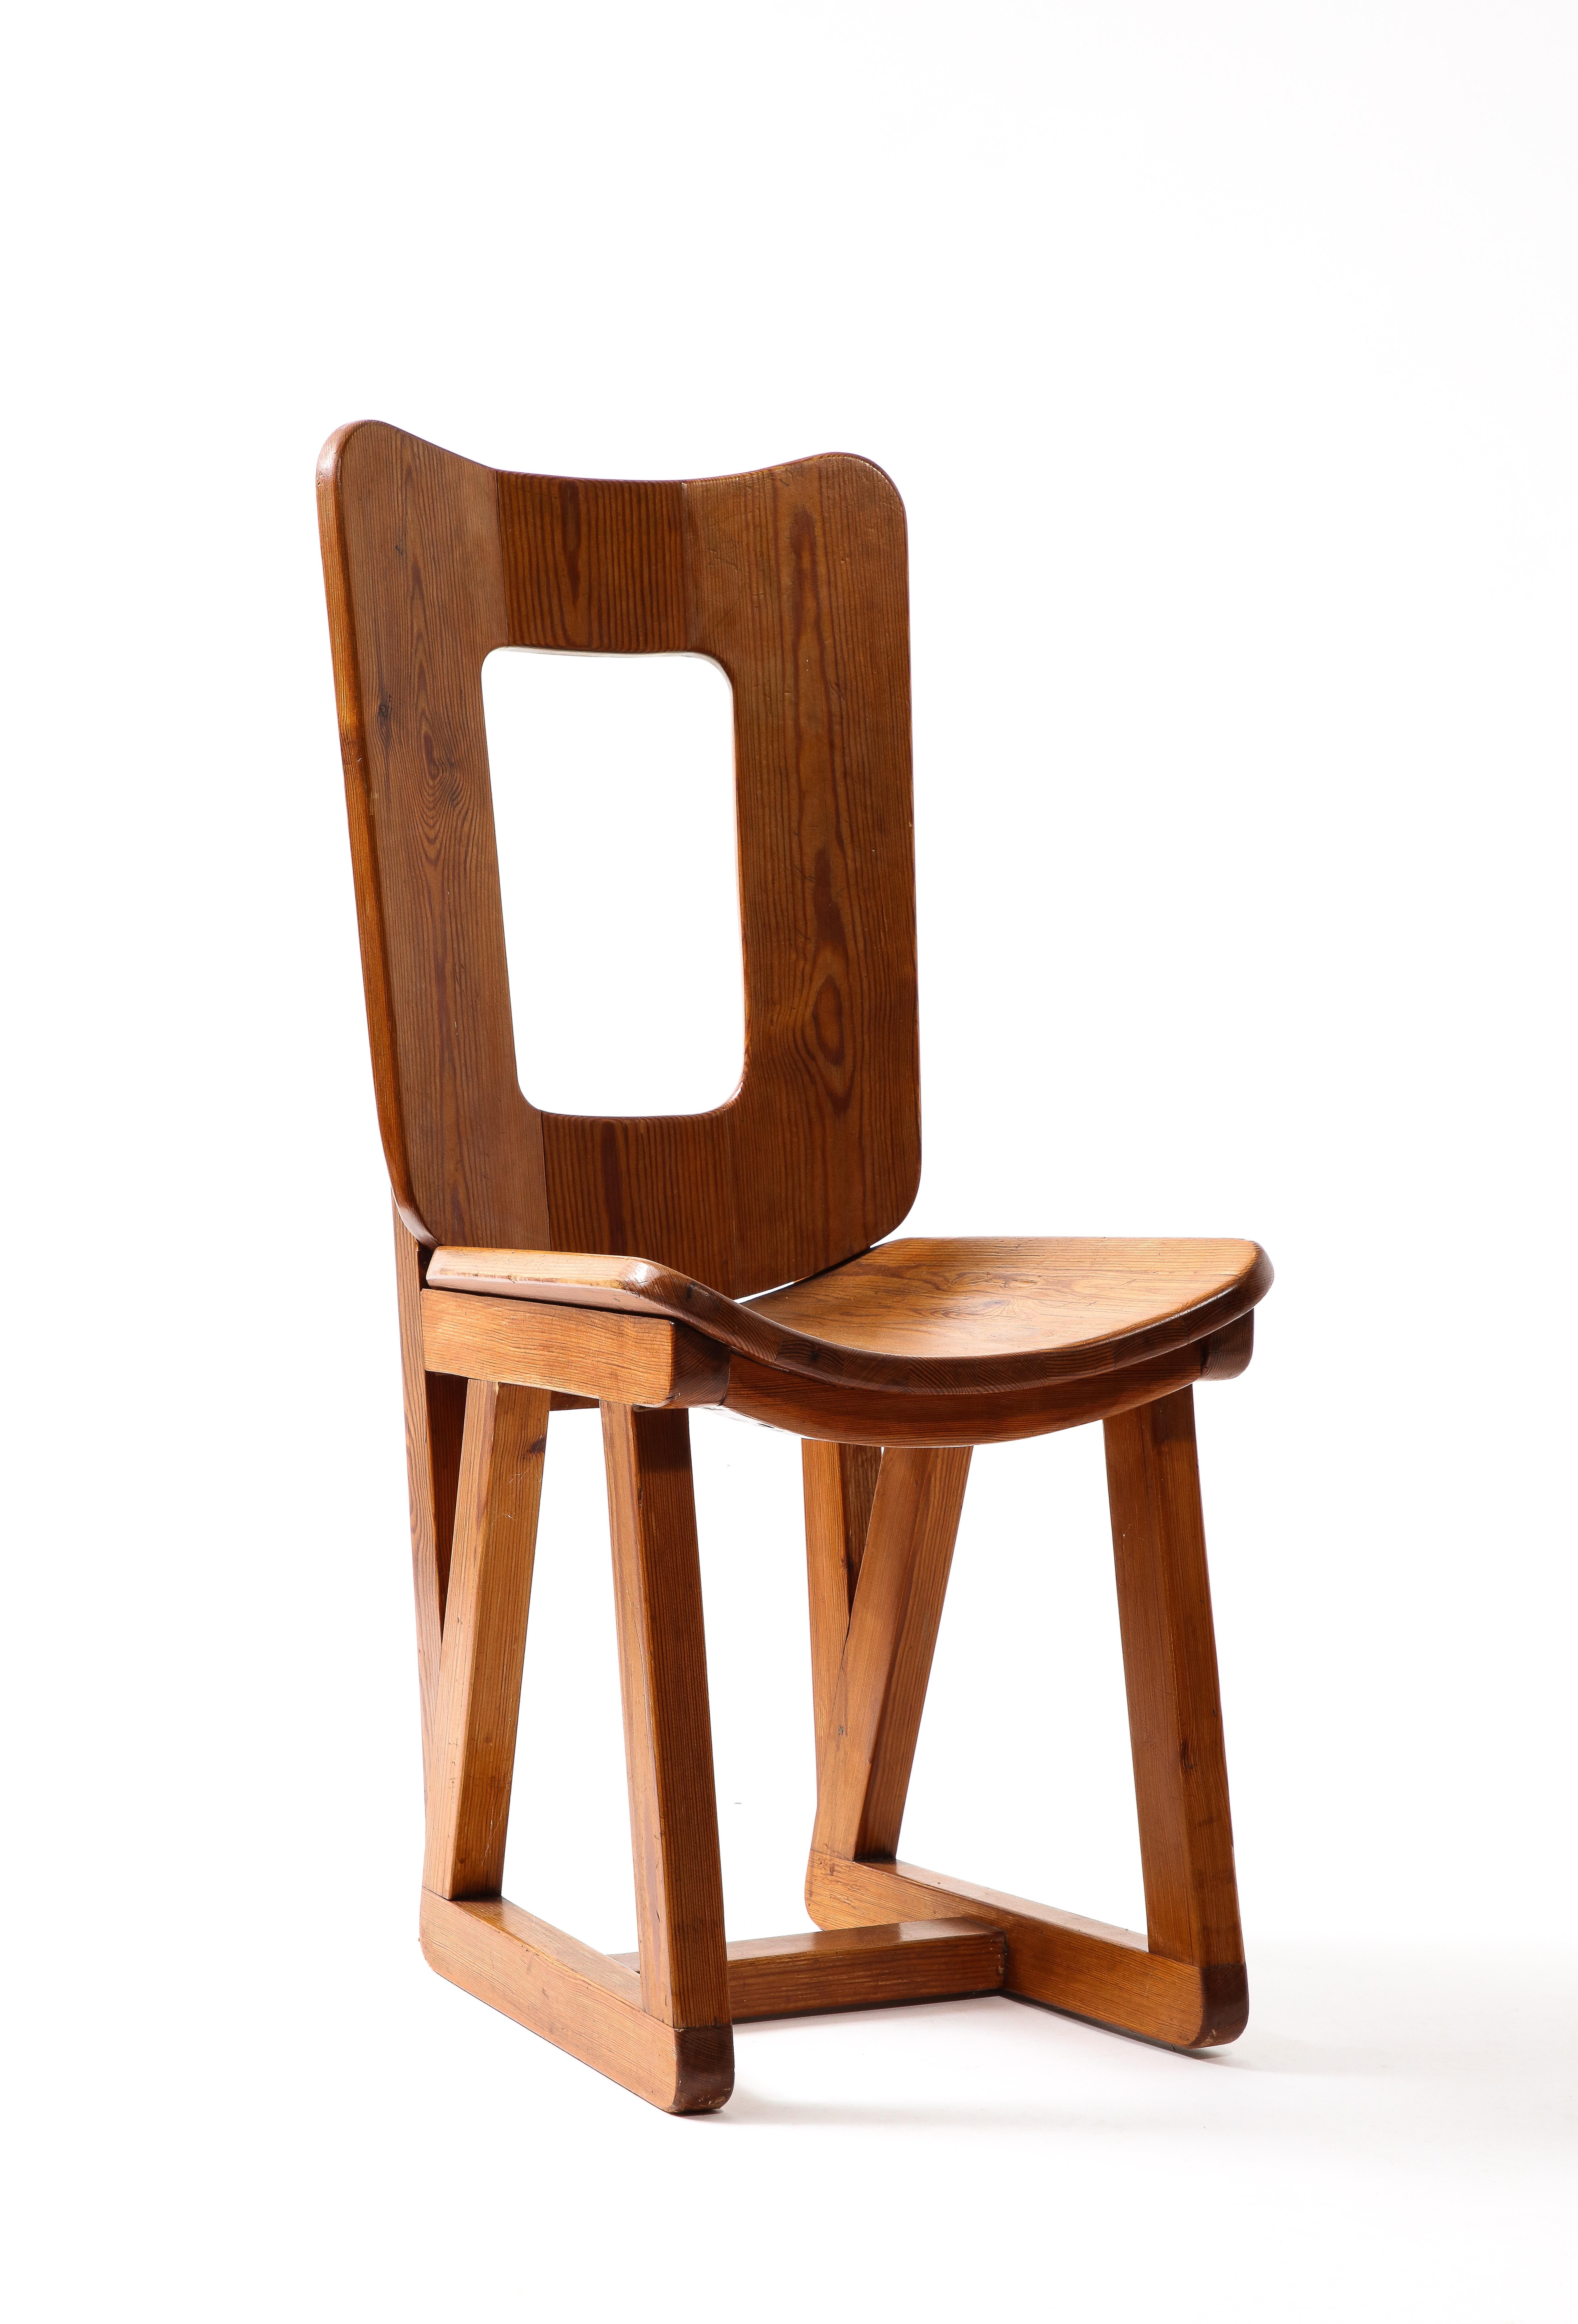 Maison Regain Side Chair, France 1960s For Sale 9